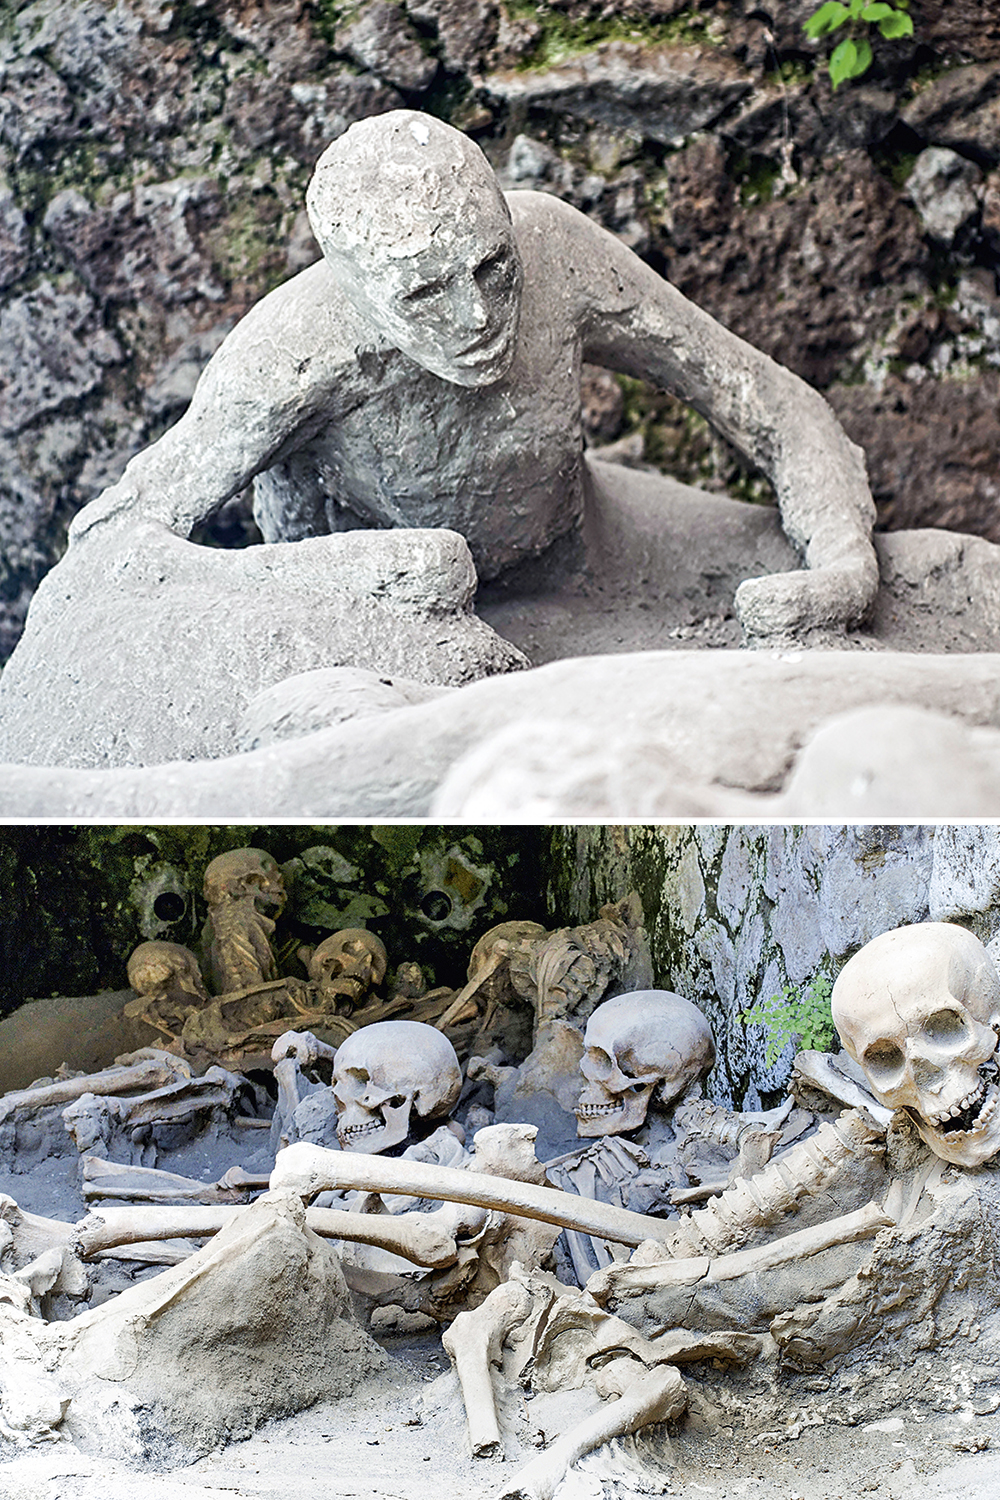 PRESERVAÇÃO VESUVIANA - A forma em gesso de uma das vítimas de Pompeia (acima) e os restos mortais dos habitantes de Herculano (abaixo): resultados diferentes de uma mesma tragédia dois milênios atrás -